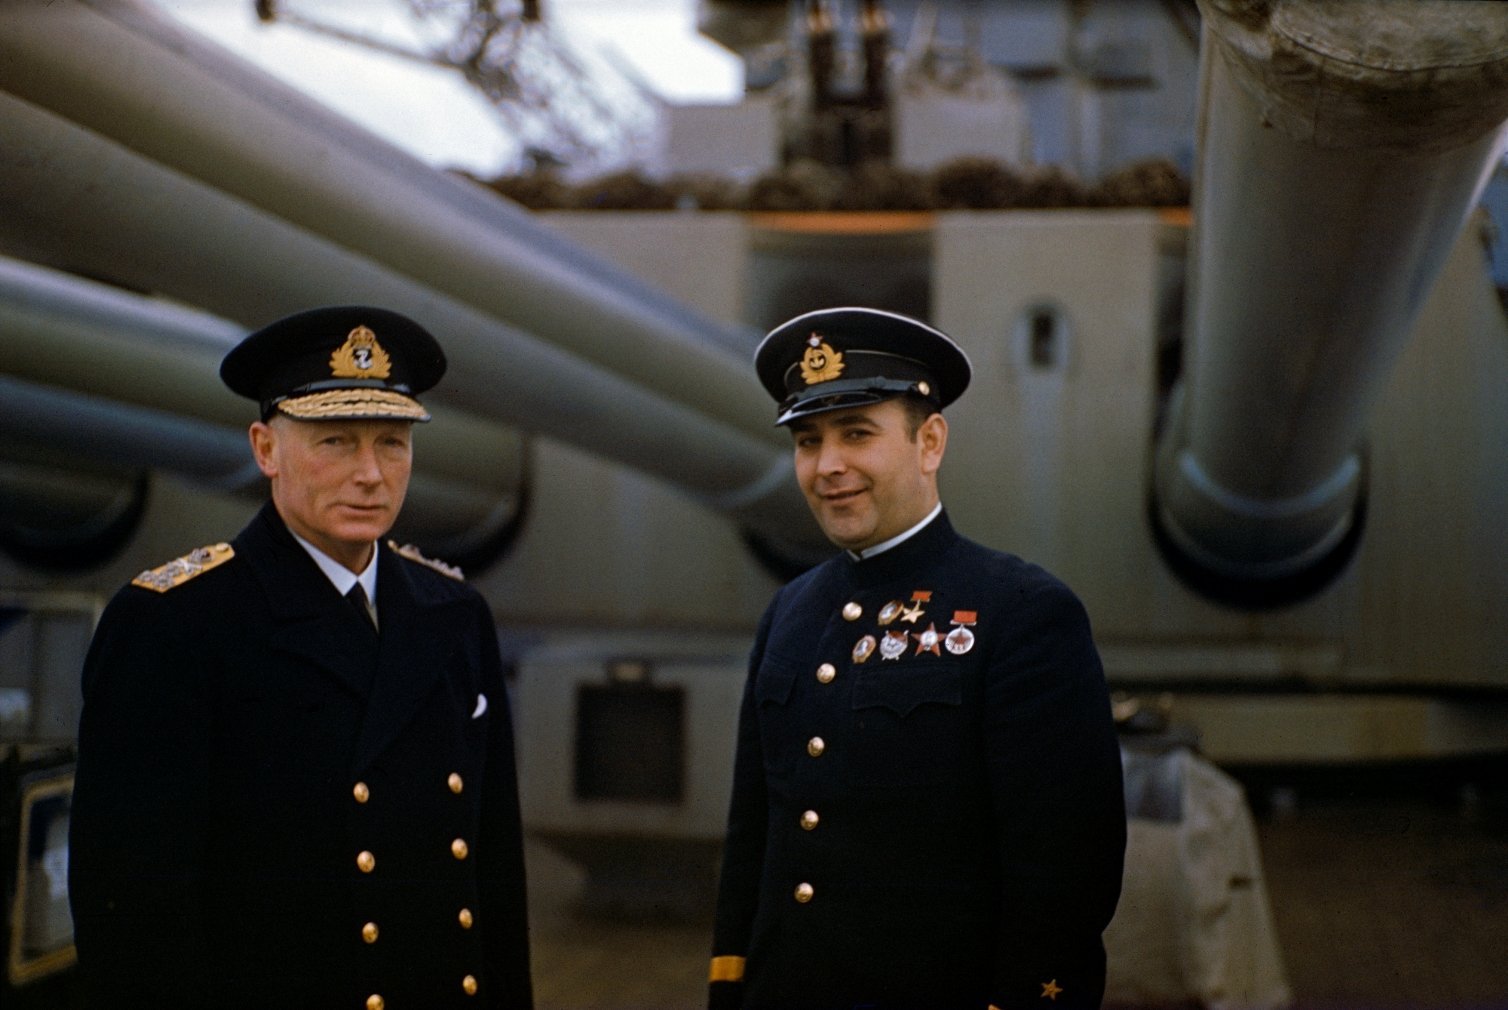 Командующий подводным флотом. Джон Тови Адмирал. Командующий английской эскадры Адмирал Дэвид Битти. Джон Тови адмиралы Великобритании.